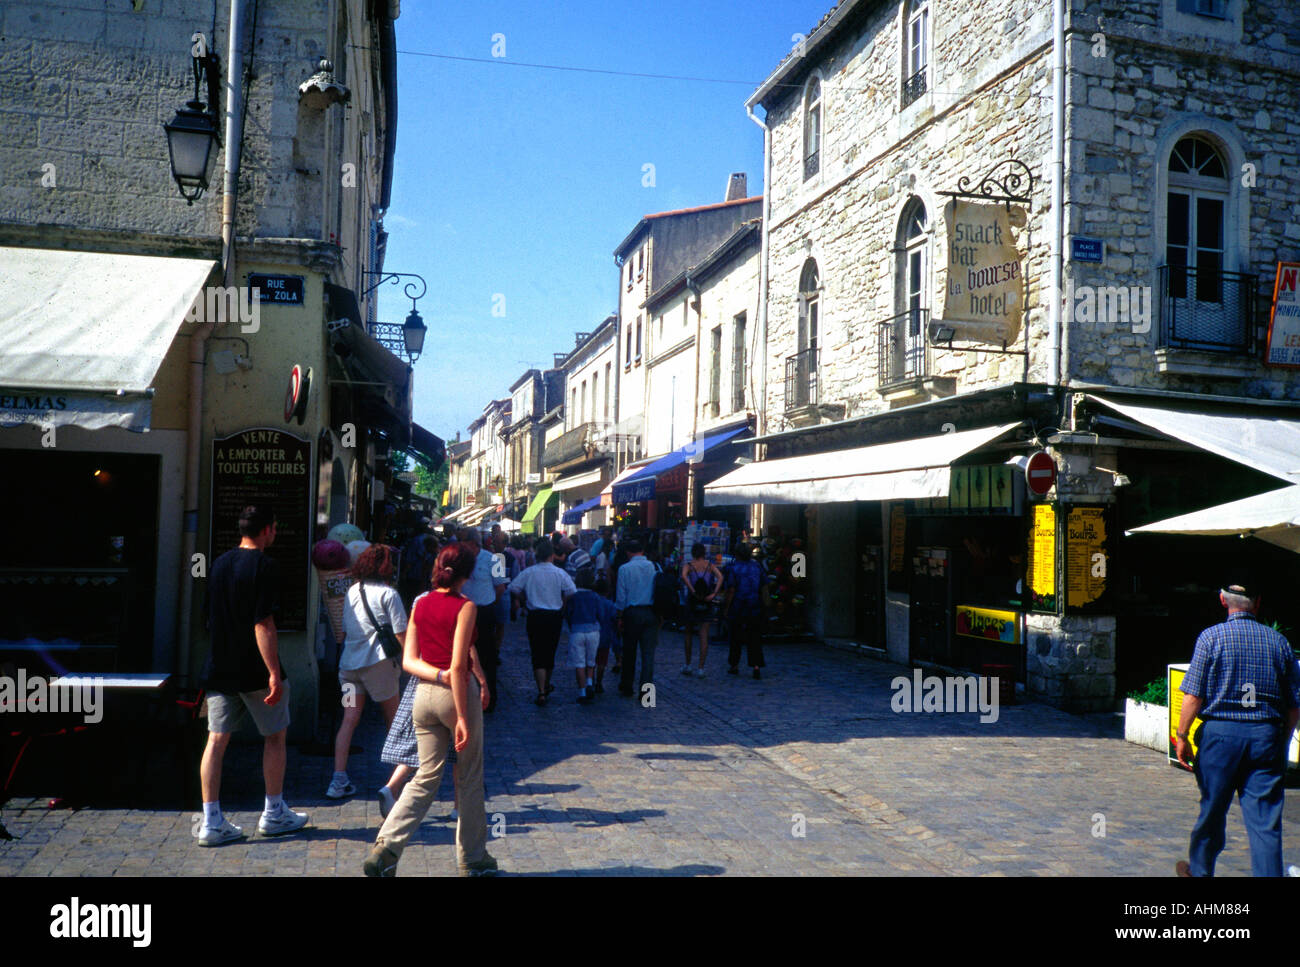 Boutique les touristes dans une rue dans le 13e siècle fortifiée d'Aigues Mortes Camargue France Europe Banque D'Images